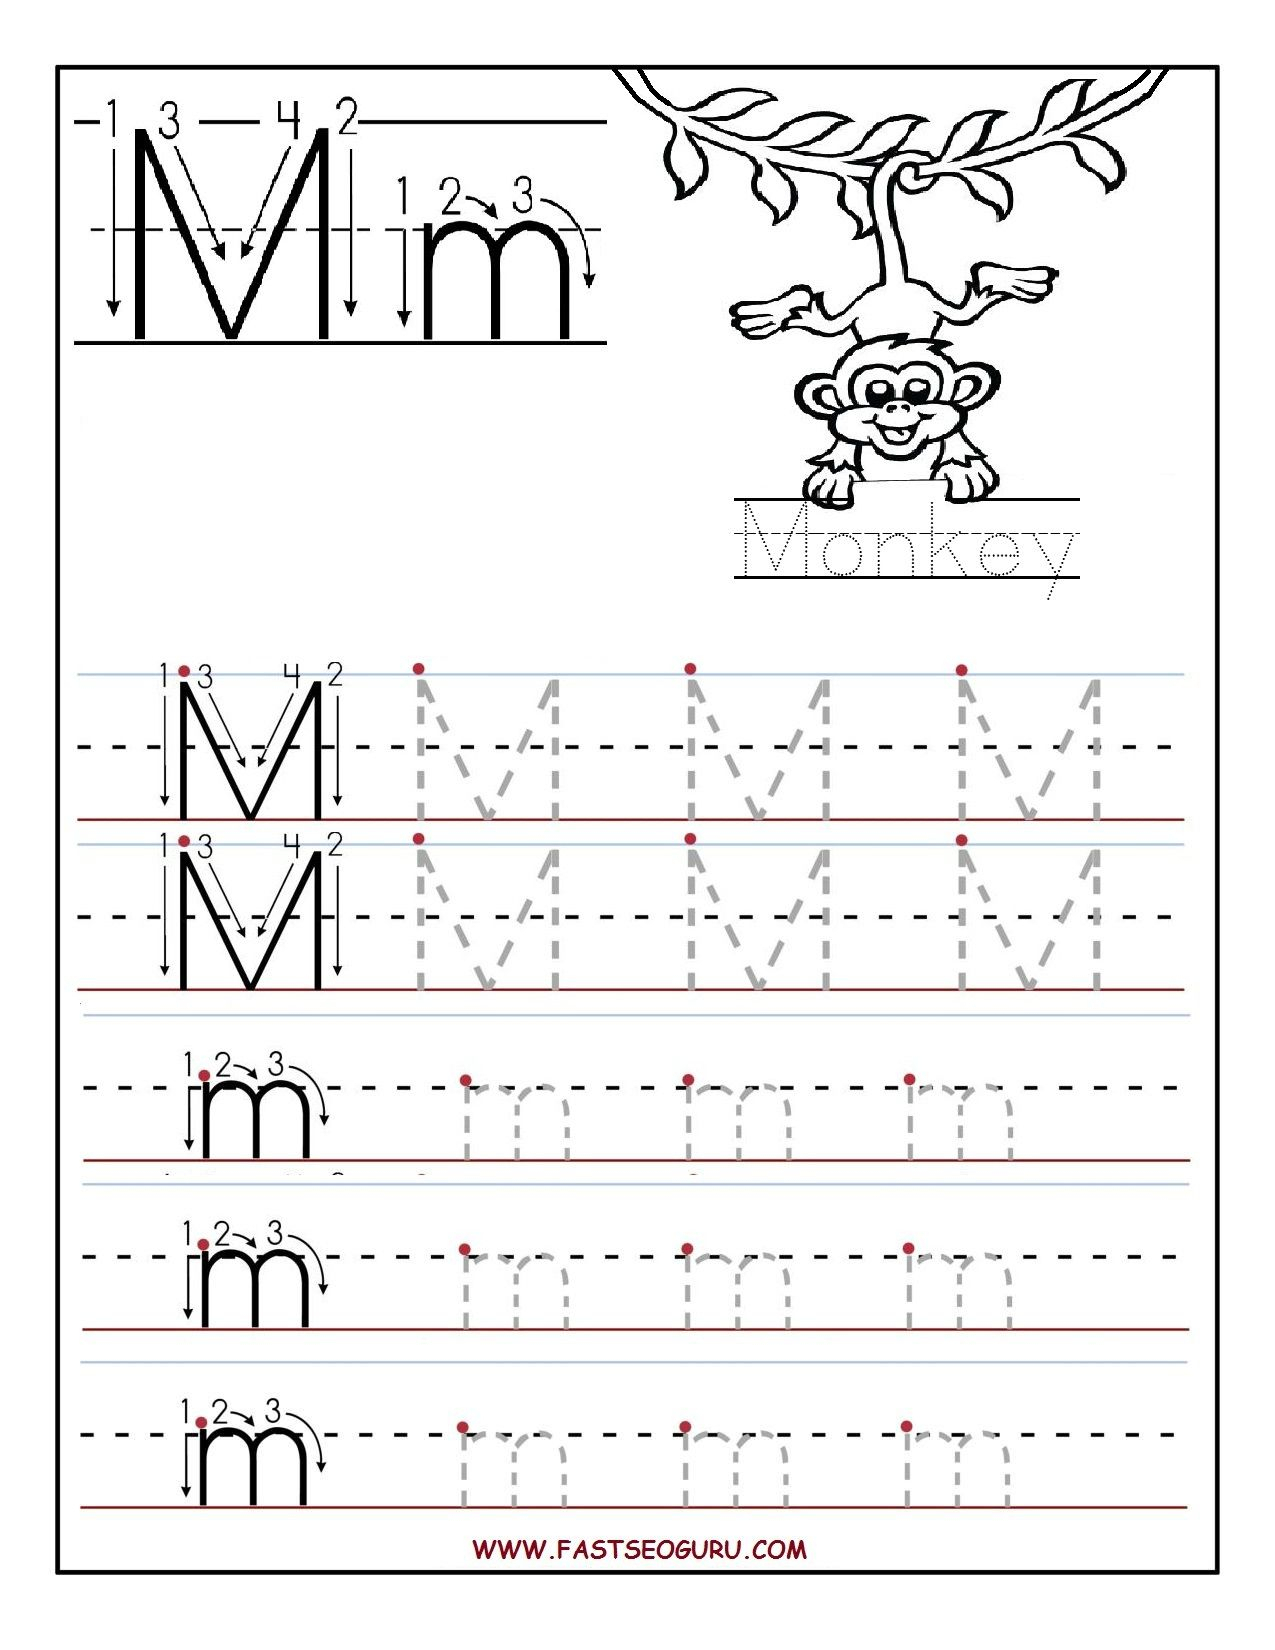 alphabet letter m worksheets for Worksheet letter worksheets phonics english esl link